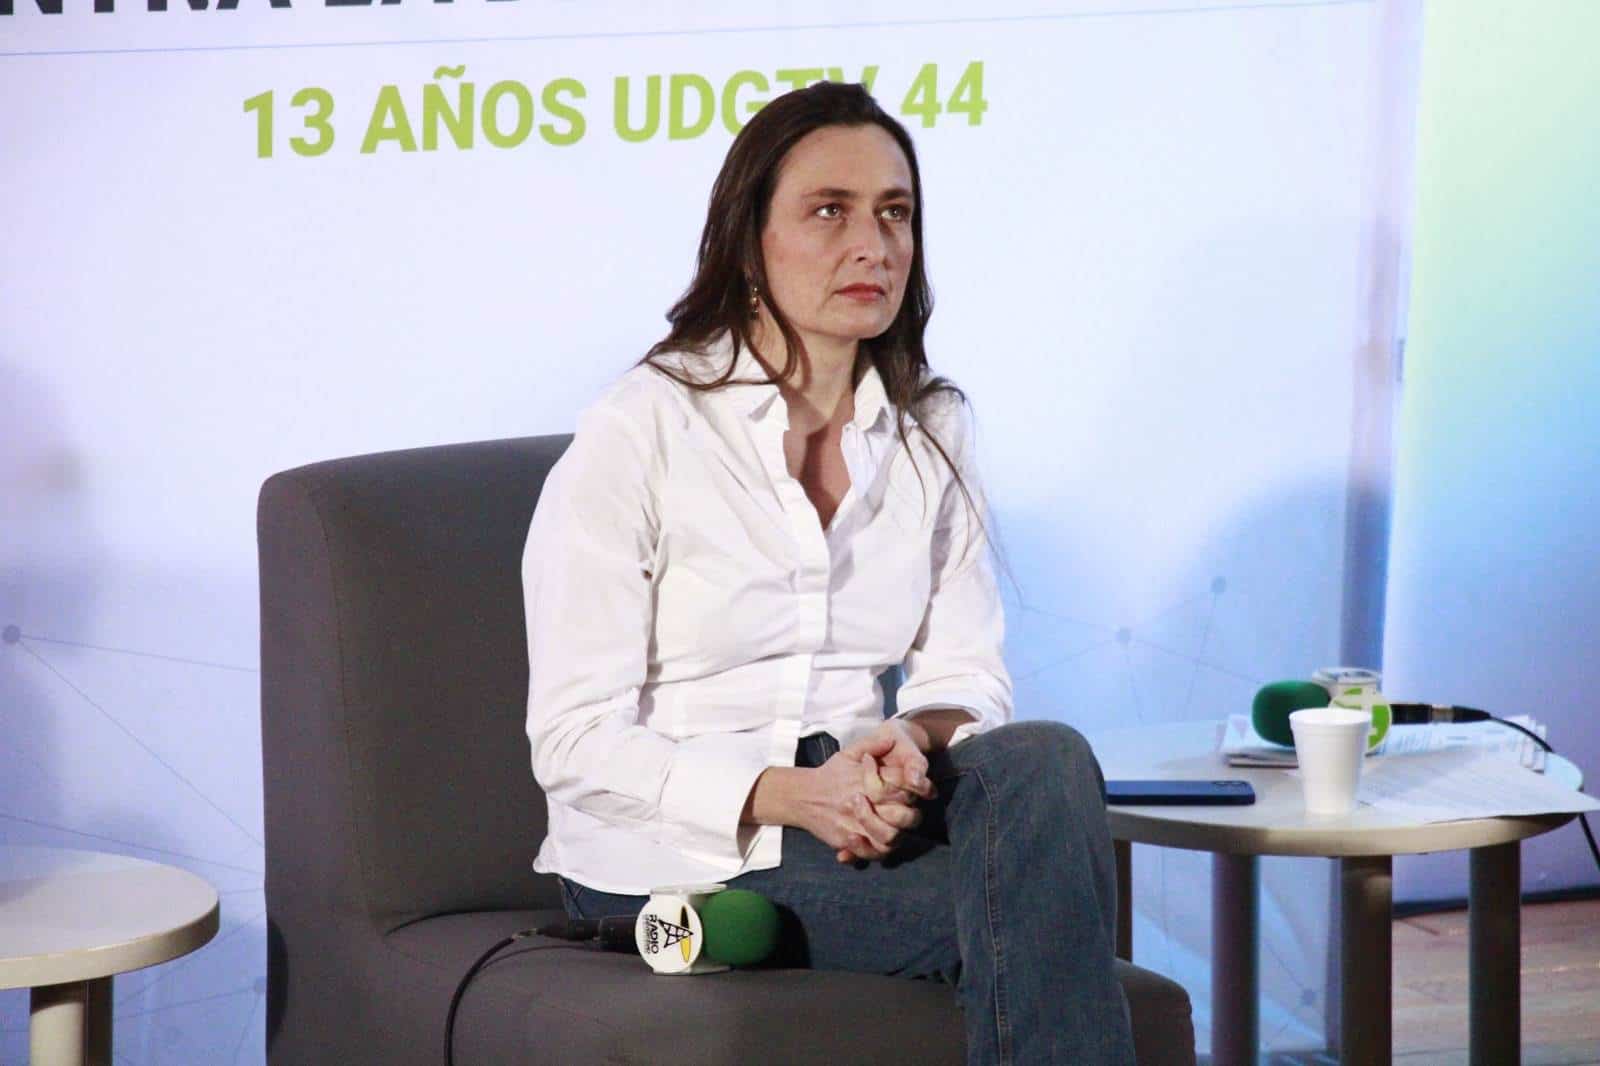 Detectar noticias y video falsos, un gran reto para los medios de comunicación en las próximas elecciones: Elodie Martínez